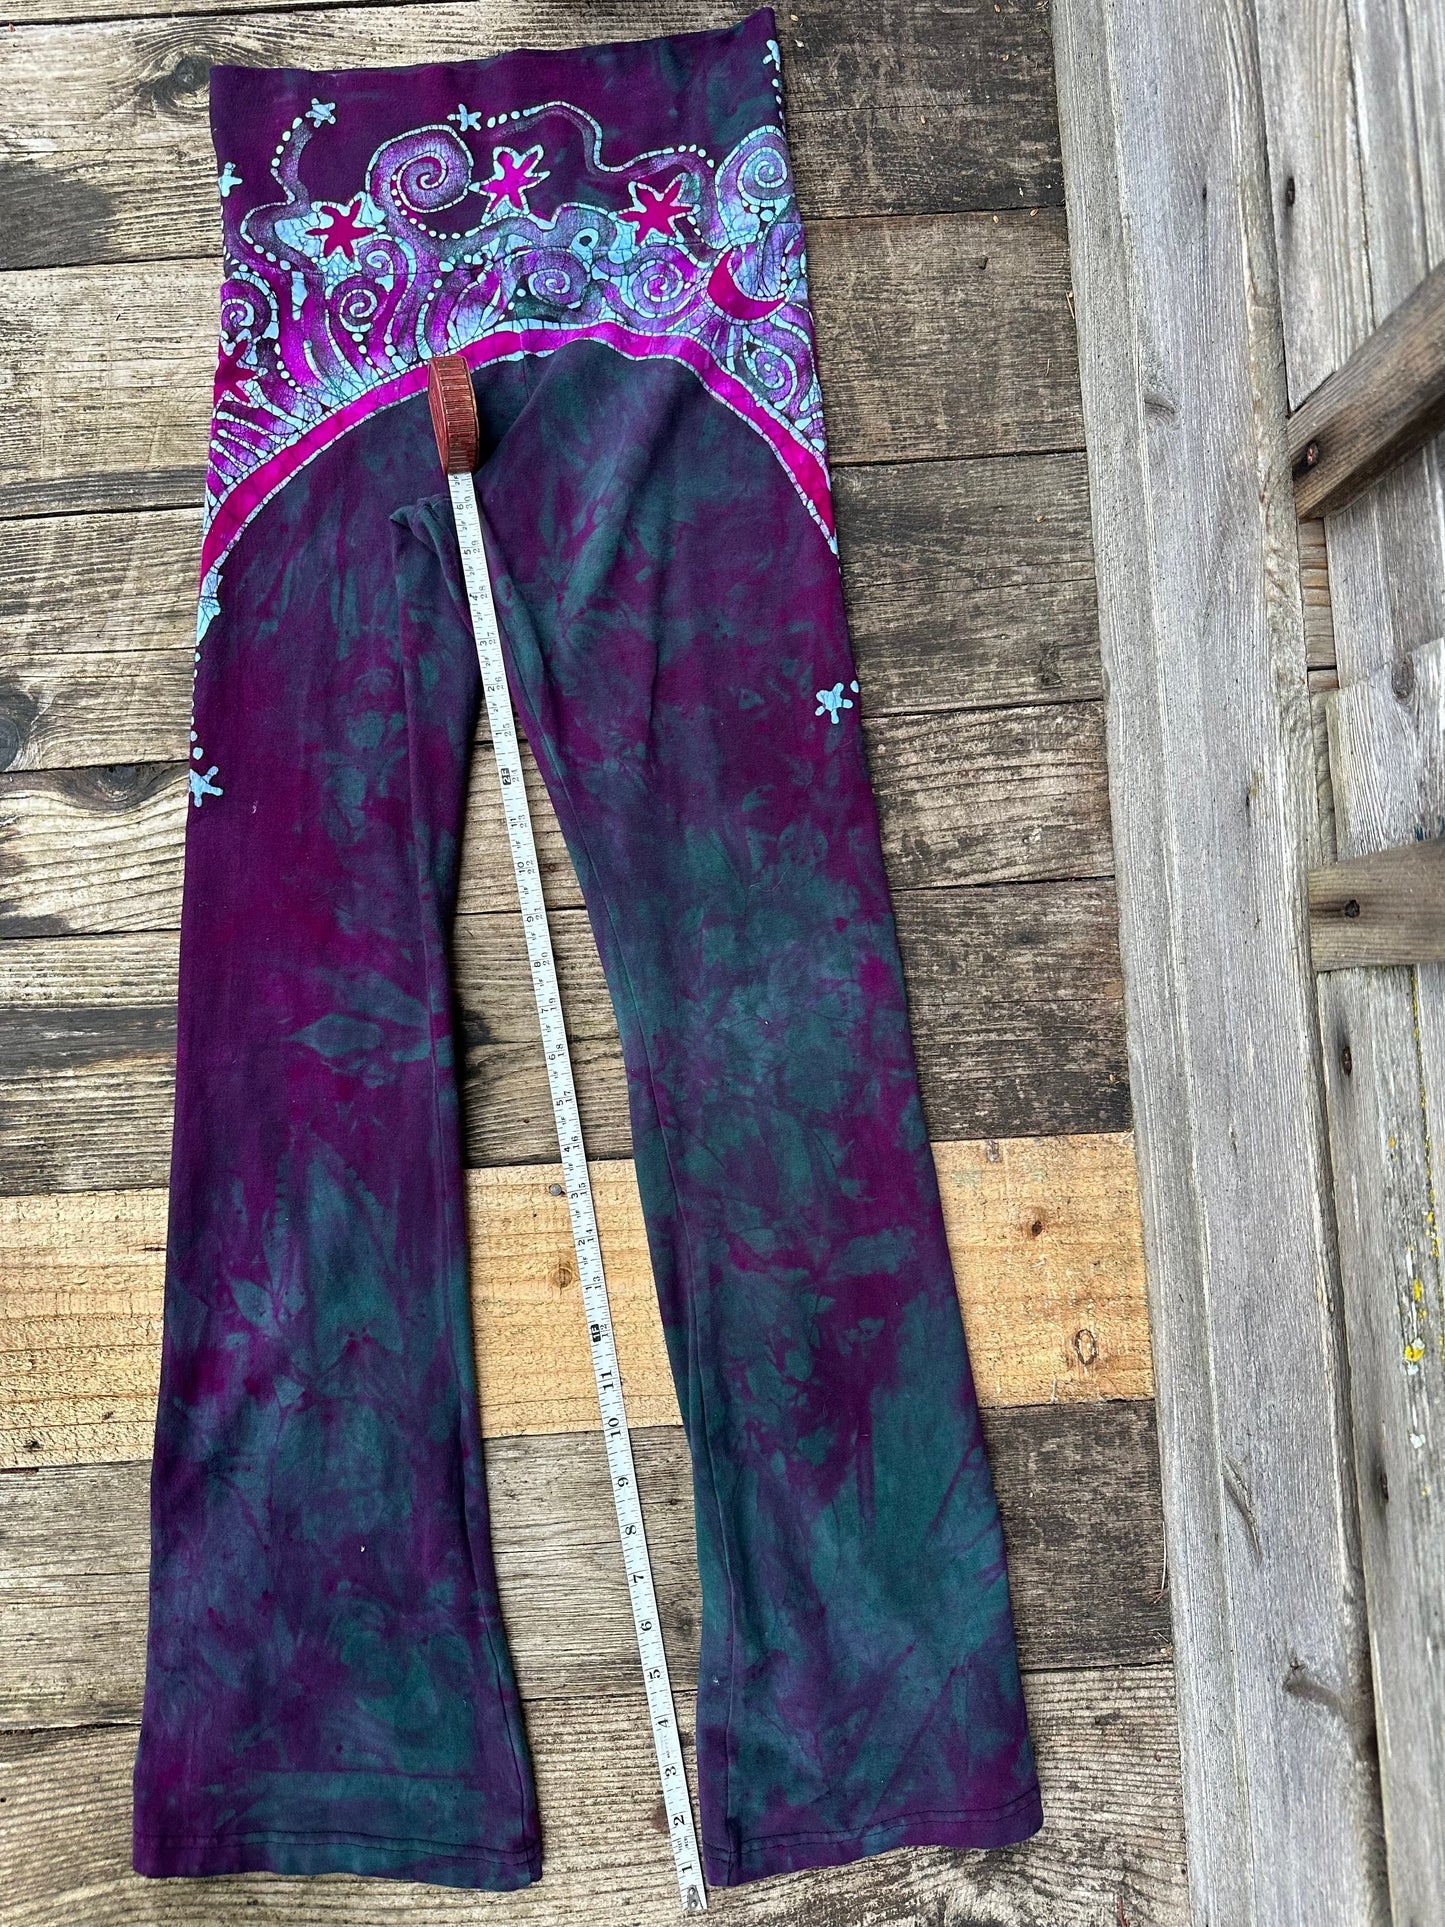 Teal and Magenta Moon Rainbow Stretchy Movement Pants - Size MEDIUM Yoga Pants batikwalla 